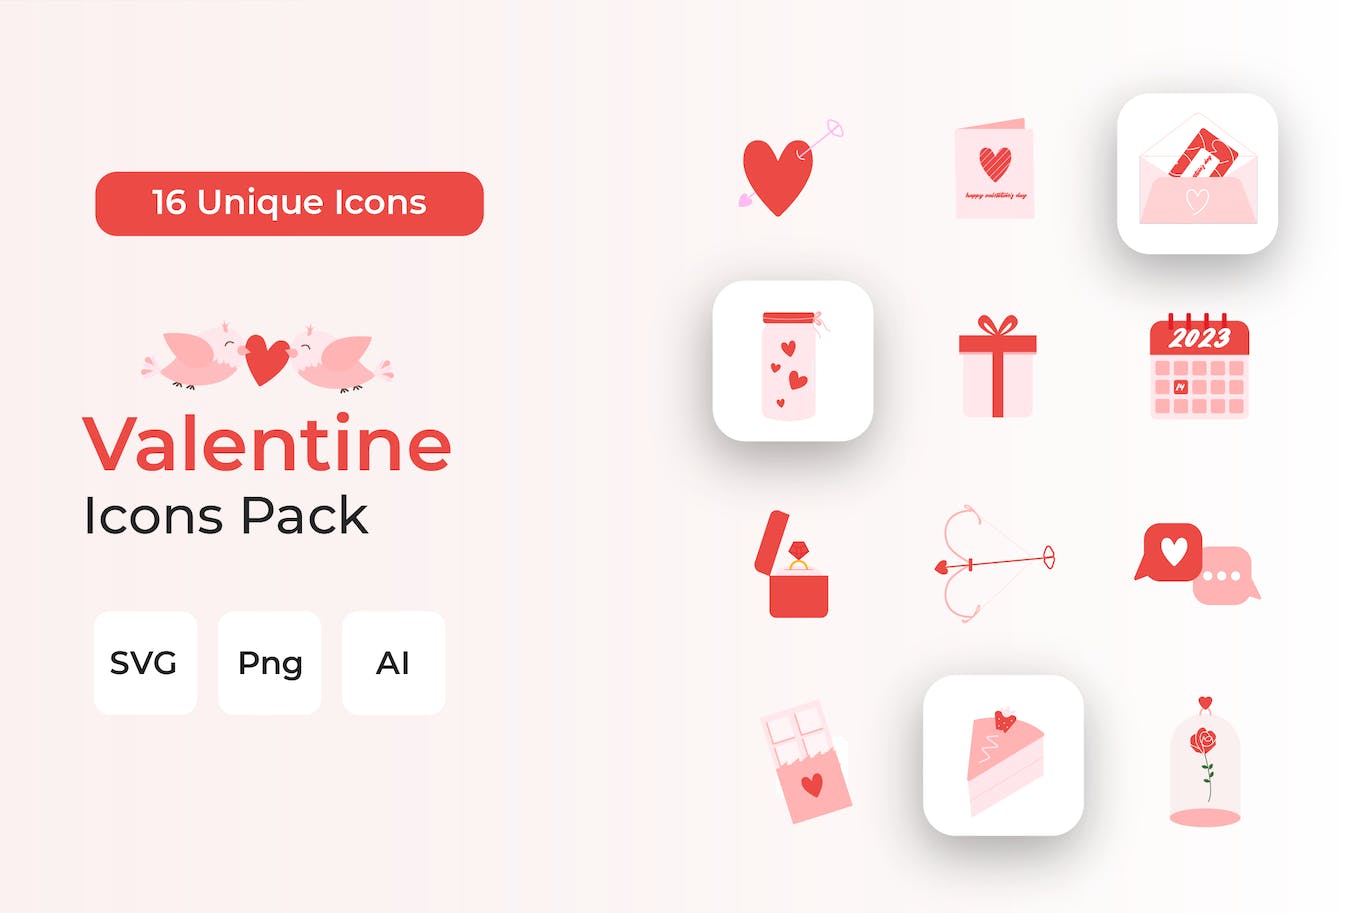 粉色情人节图标包 Valentine Icons Pack 图标素材 第1张